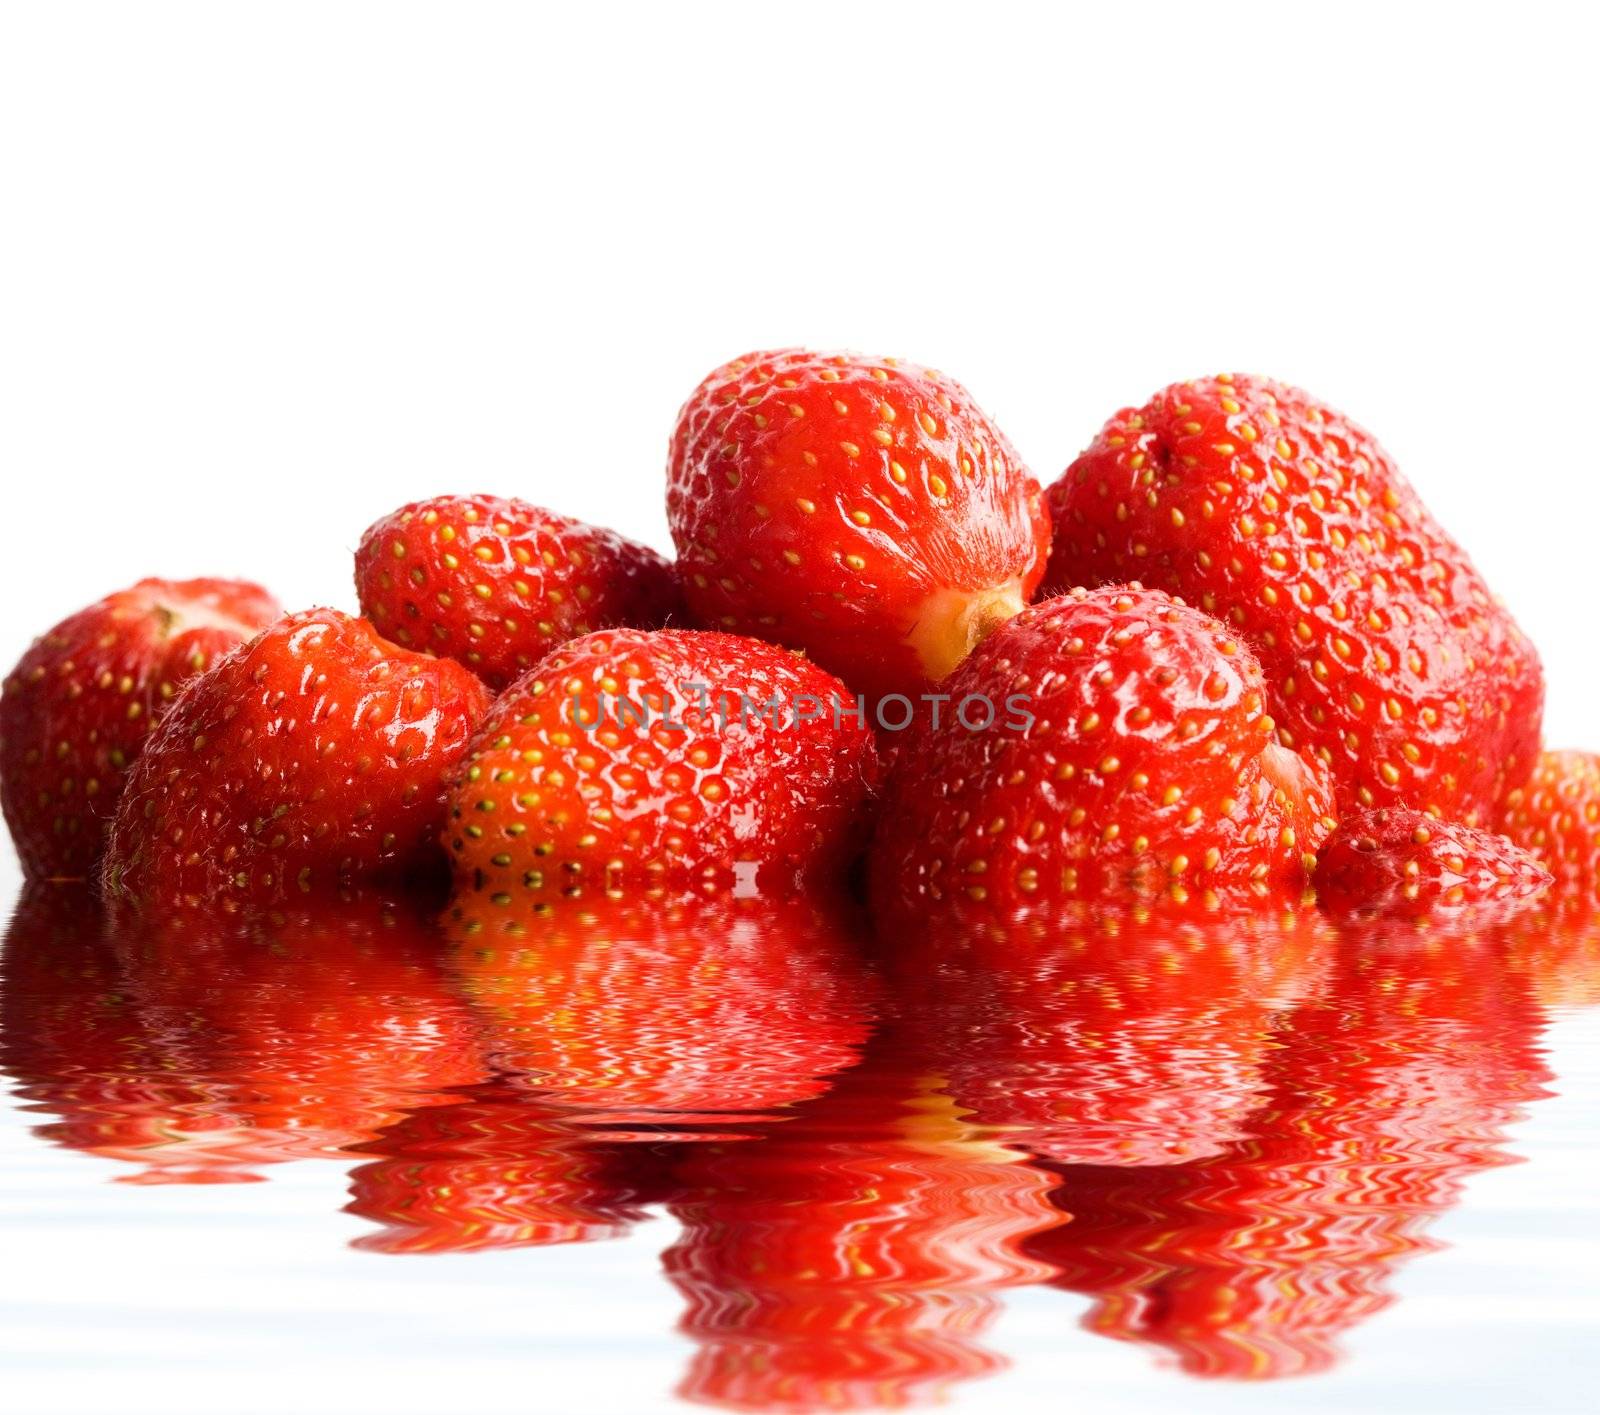 Big berries by velkol